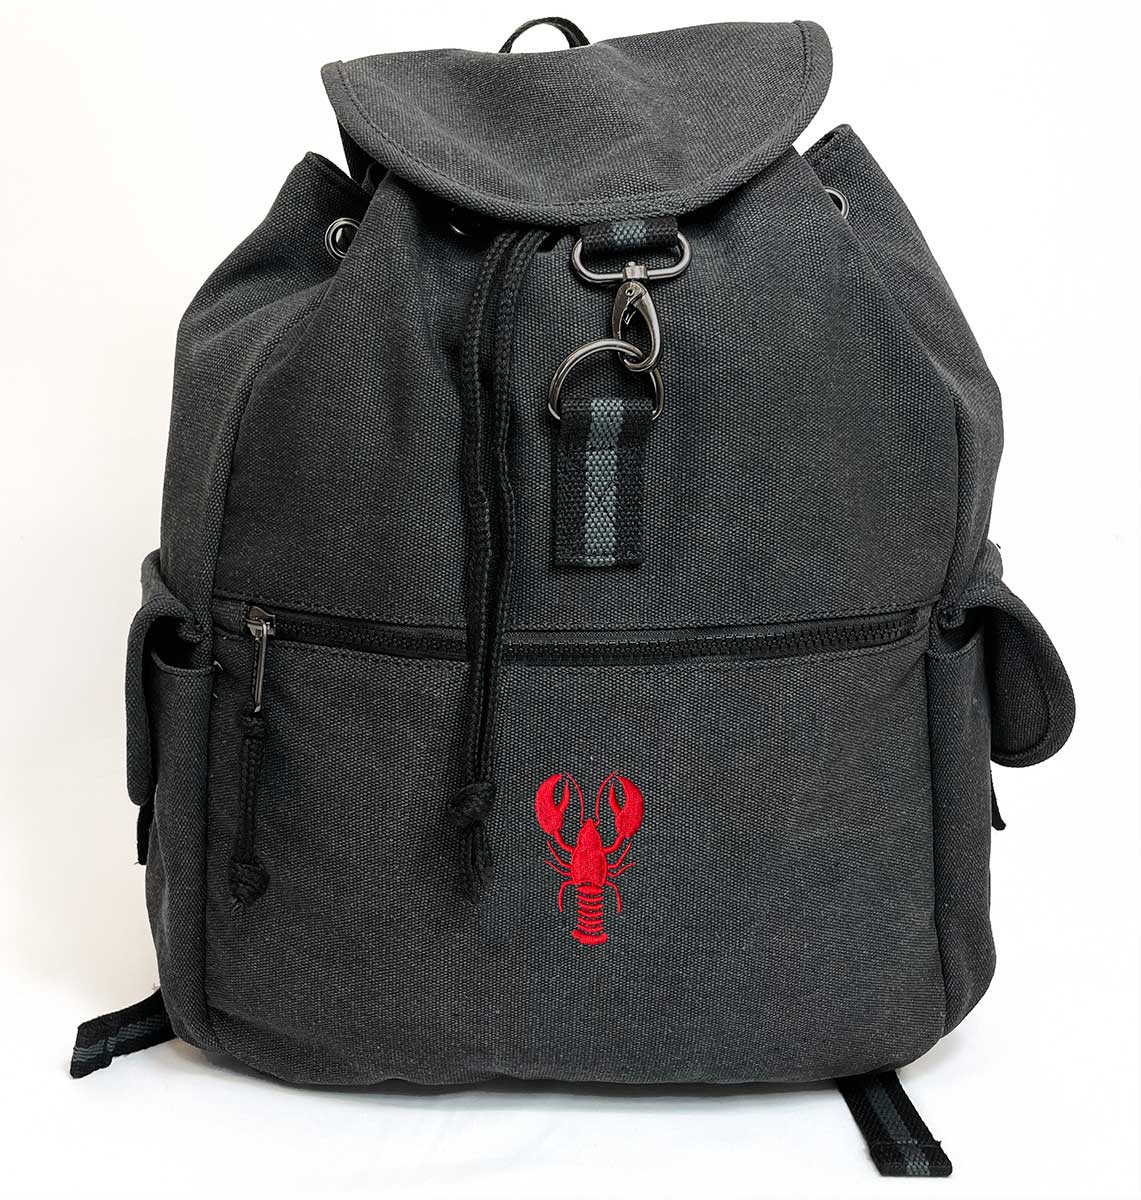 Lobster Vintage Canvas Backpack - Blue Panda